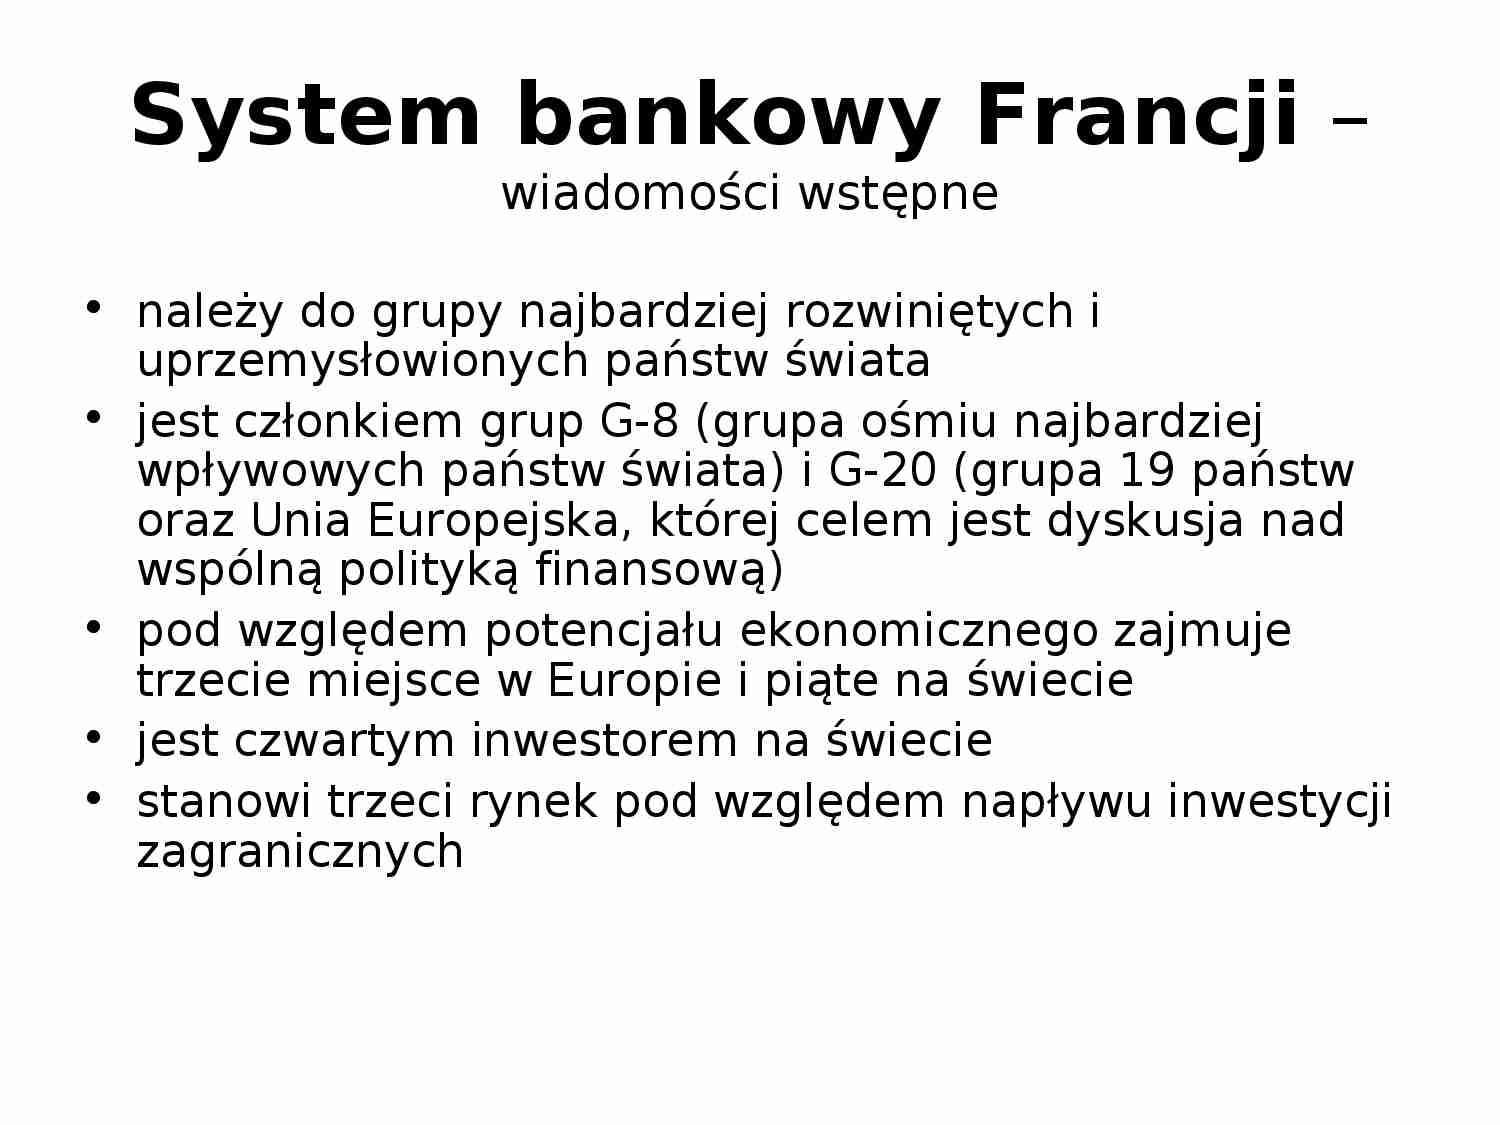 System bankowy we Francji - strona 1